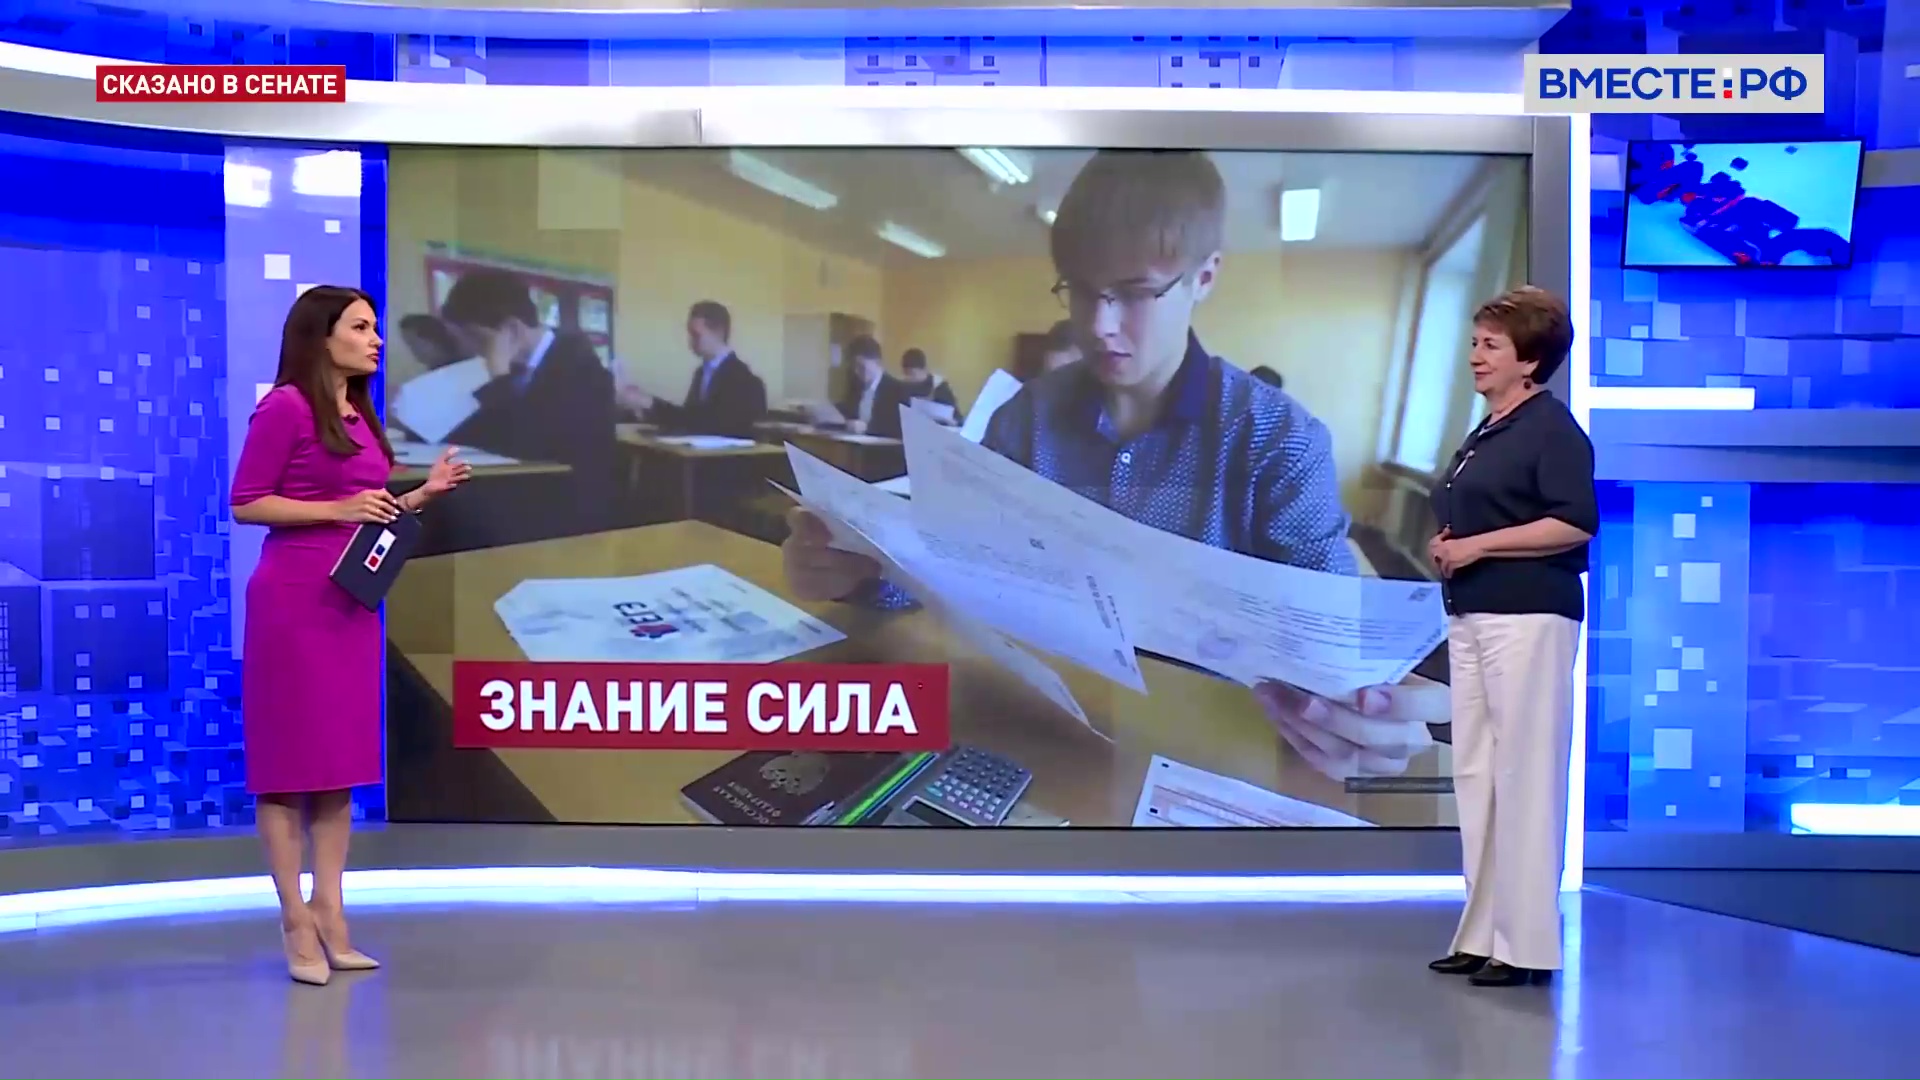 Сдача ОГЭ девятиклассниками в регионах. Екатерина Алтабаева. Сказано в Сенате